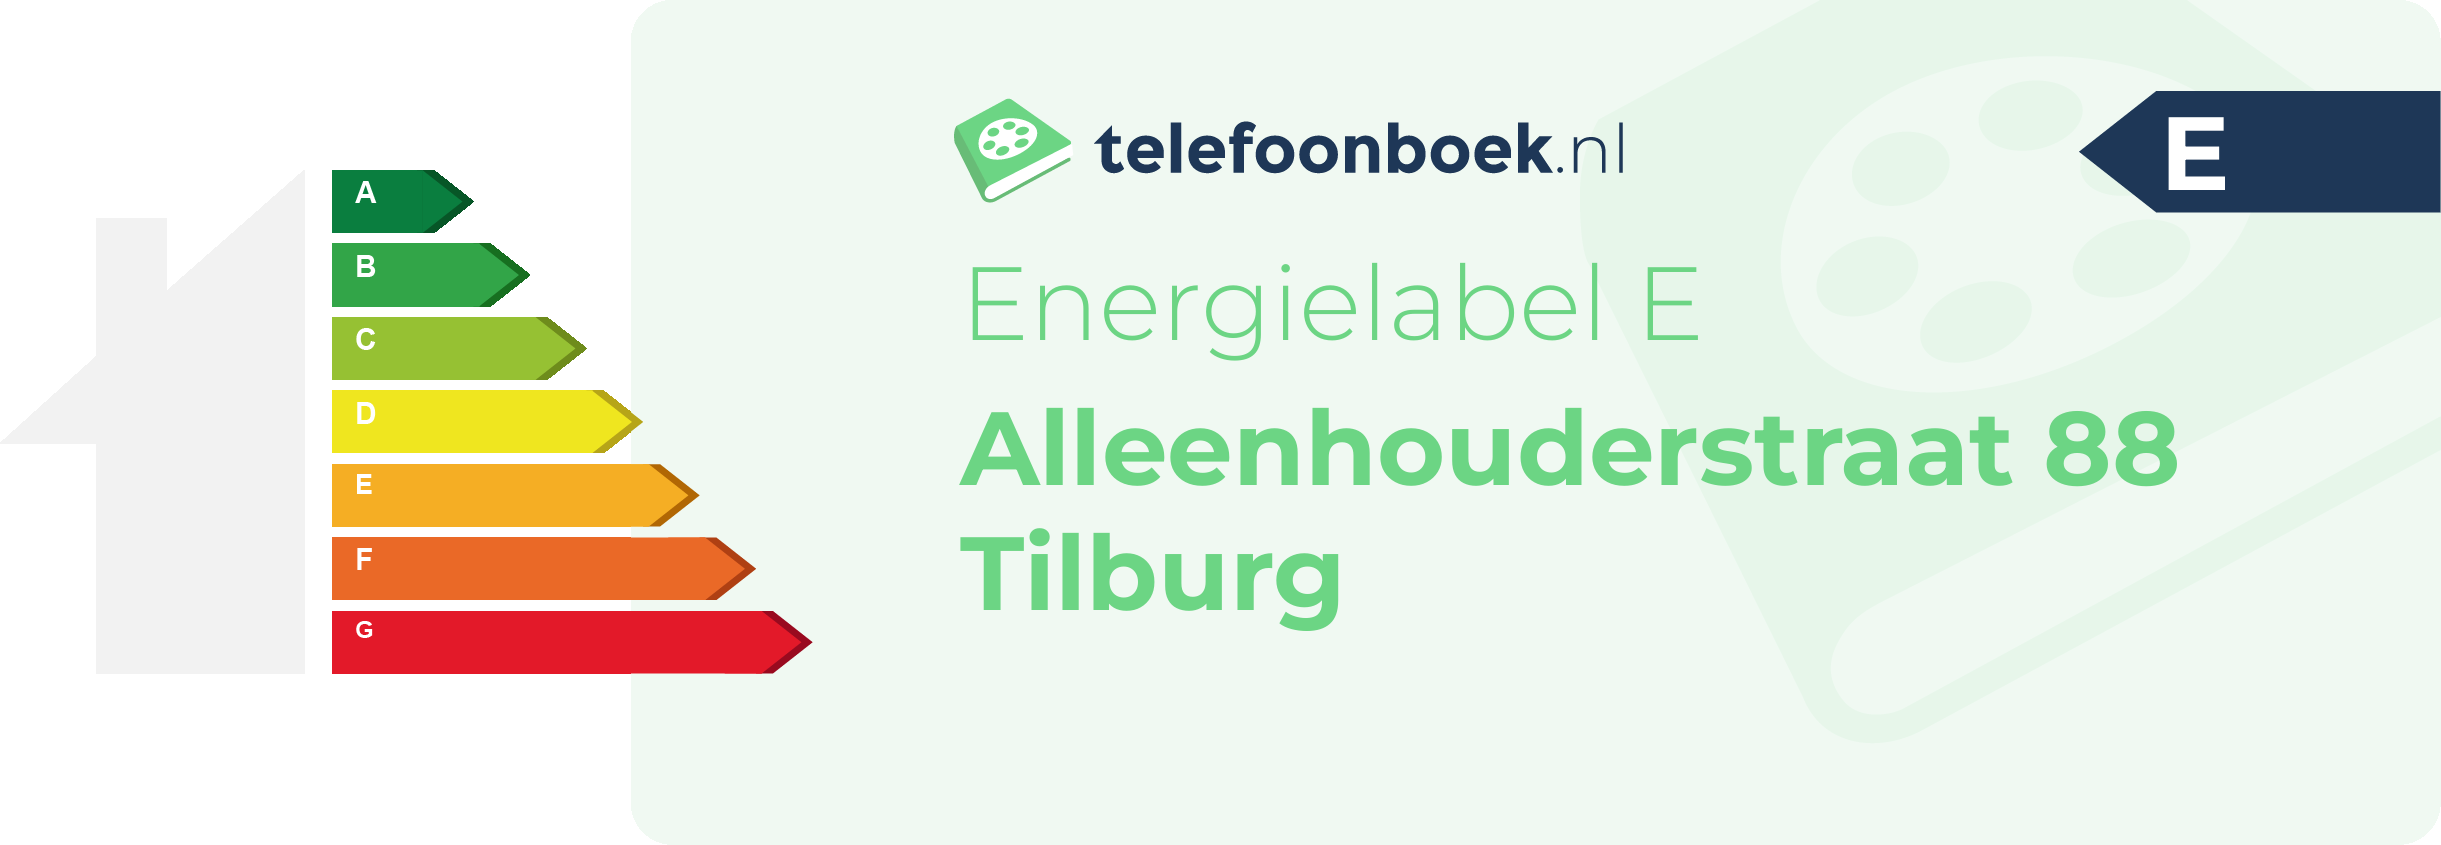 Energielabel Alleenhouderstraat 88 Tilburg